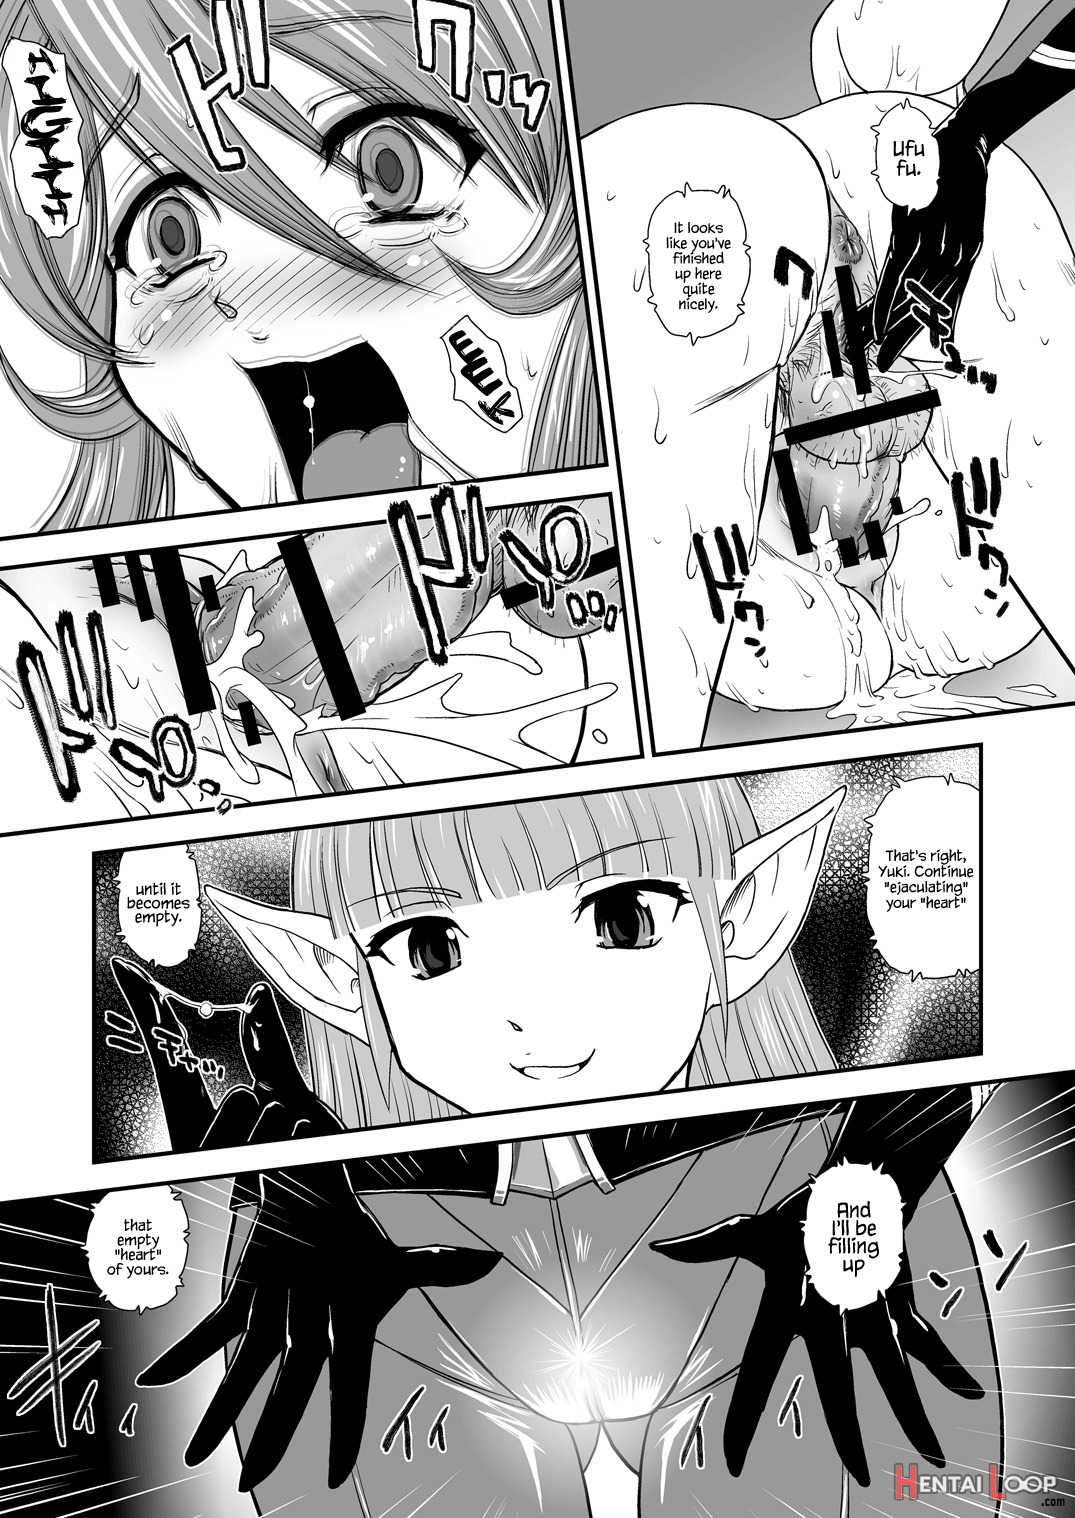 Yamato 2199 Alternative page 27